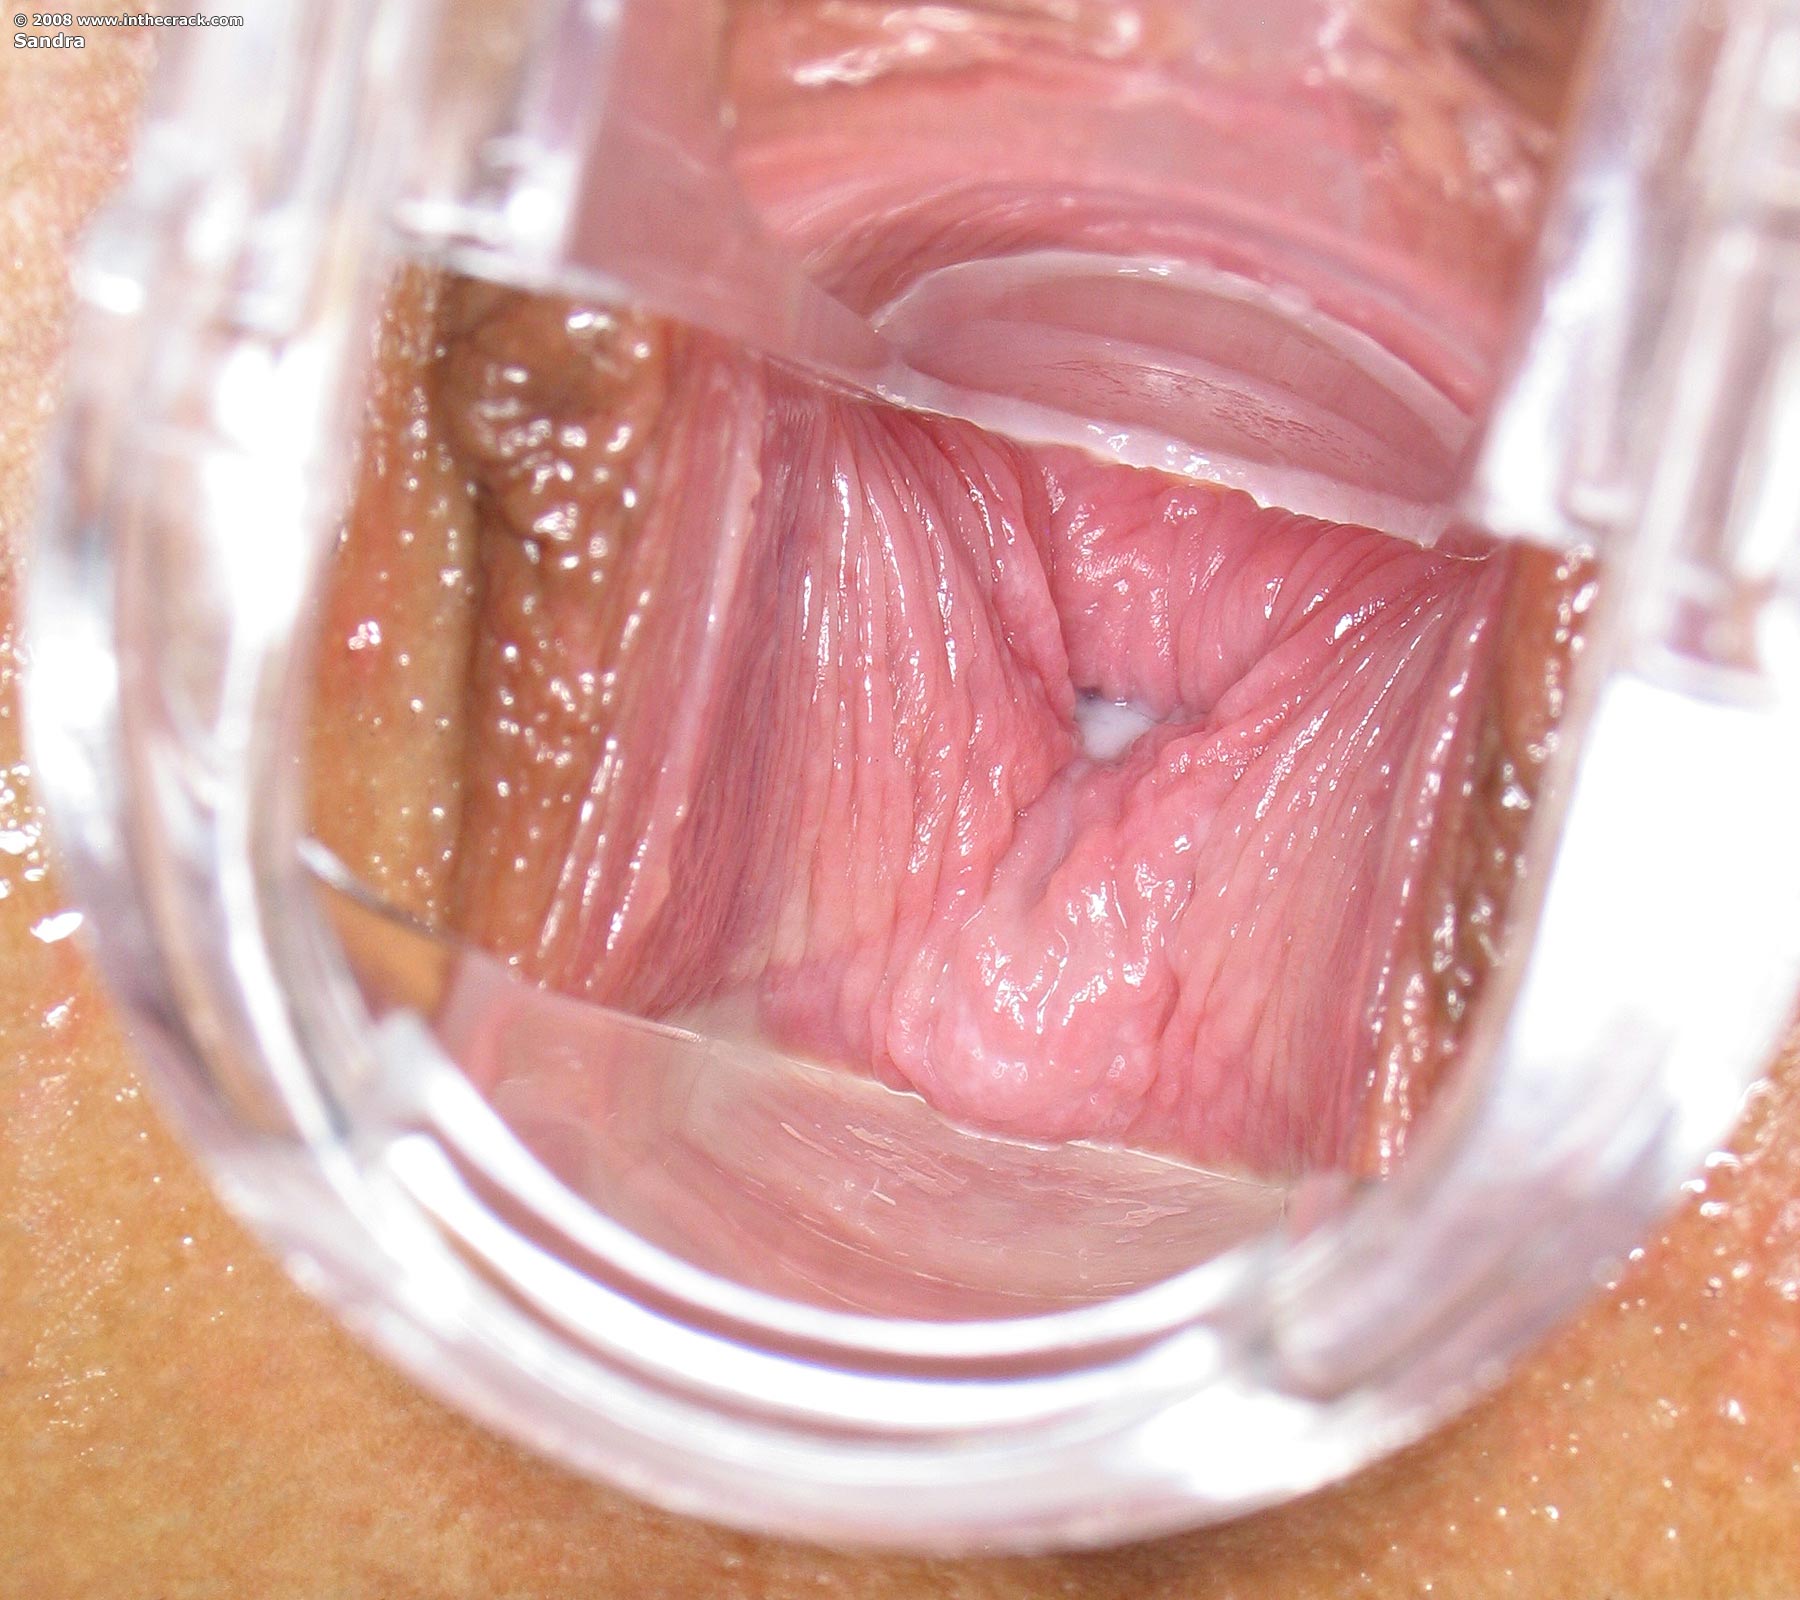 Broken Glass Vagina Pics.